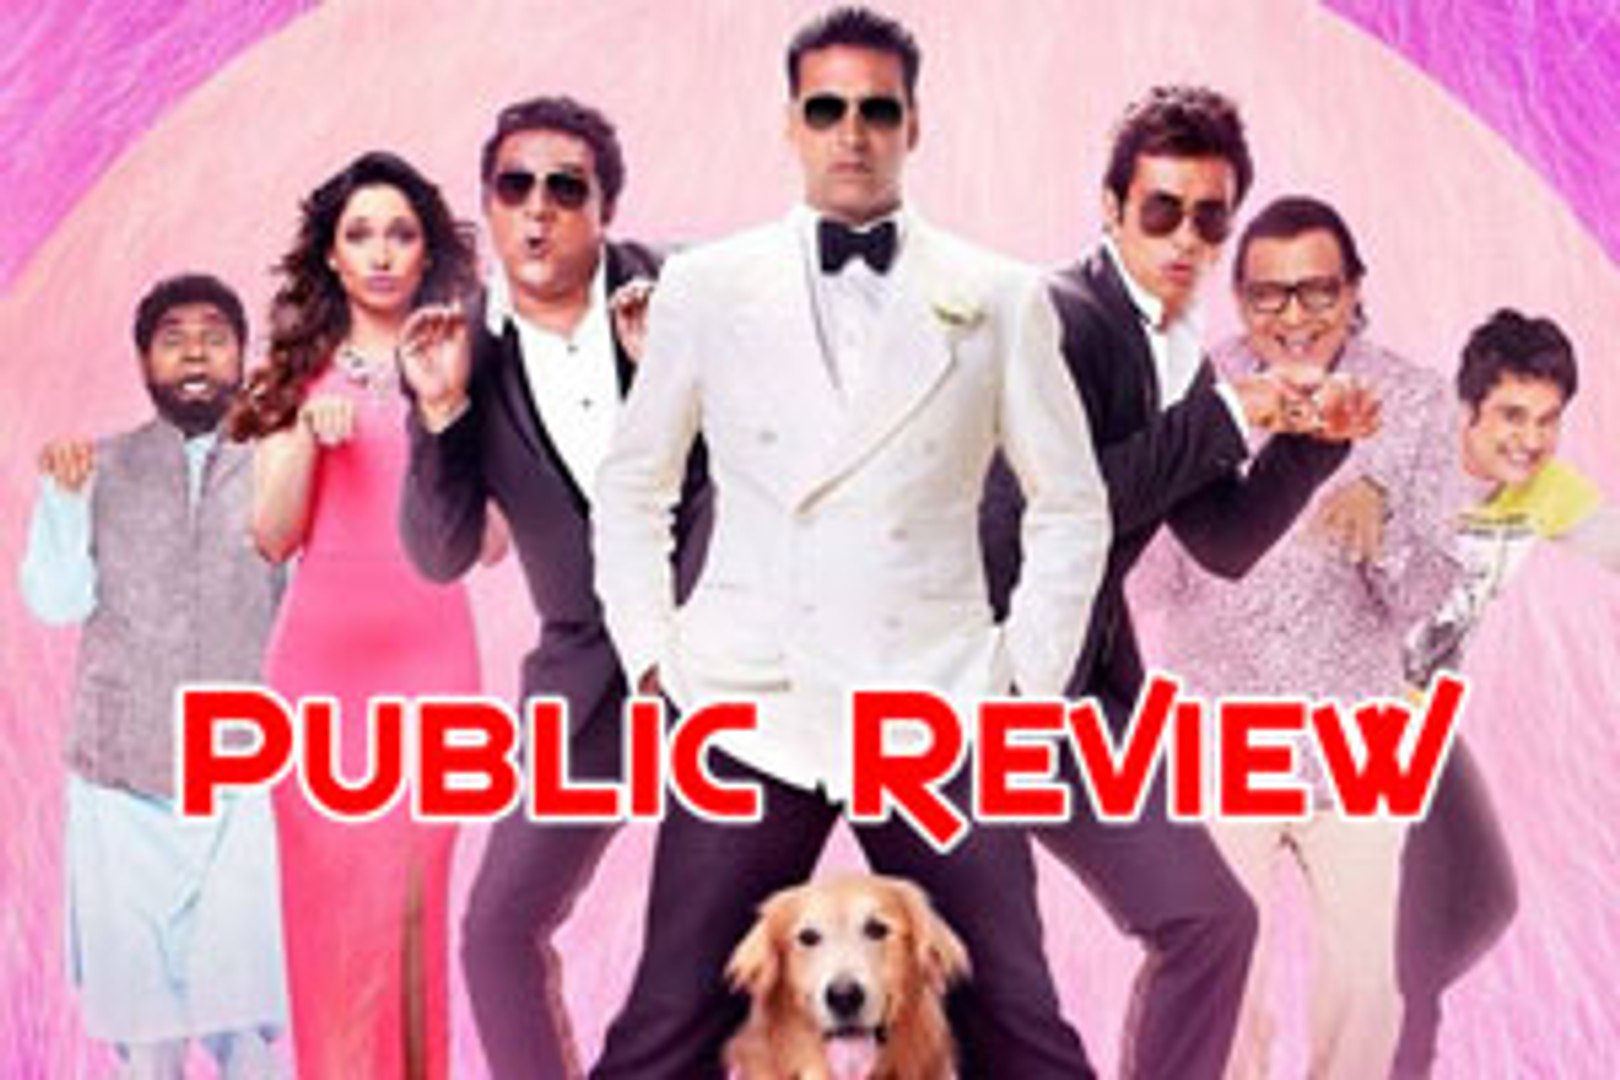 Entertainment: Public Review